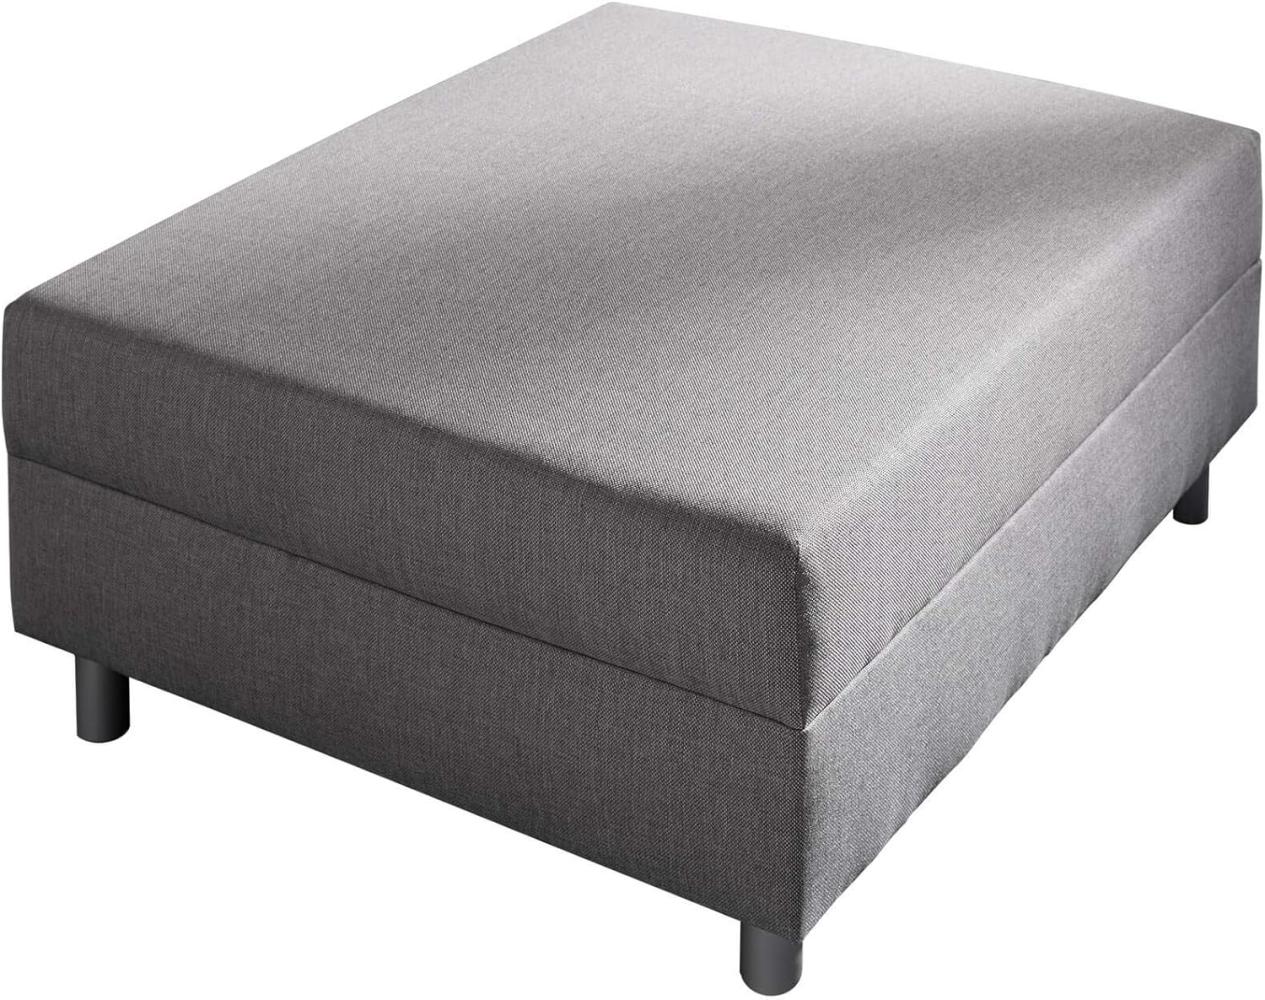 Sofa-Hocker Clovis Grau Modul B98 x T83 Flachgewebe Sitzhocker Bild 1